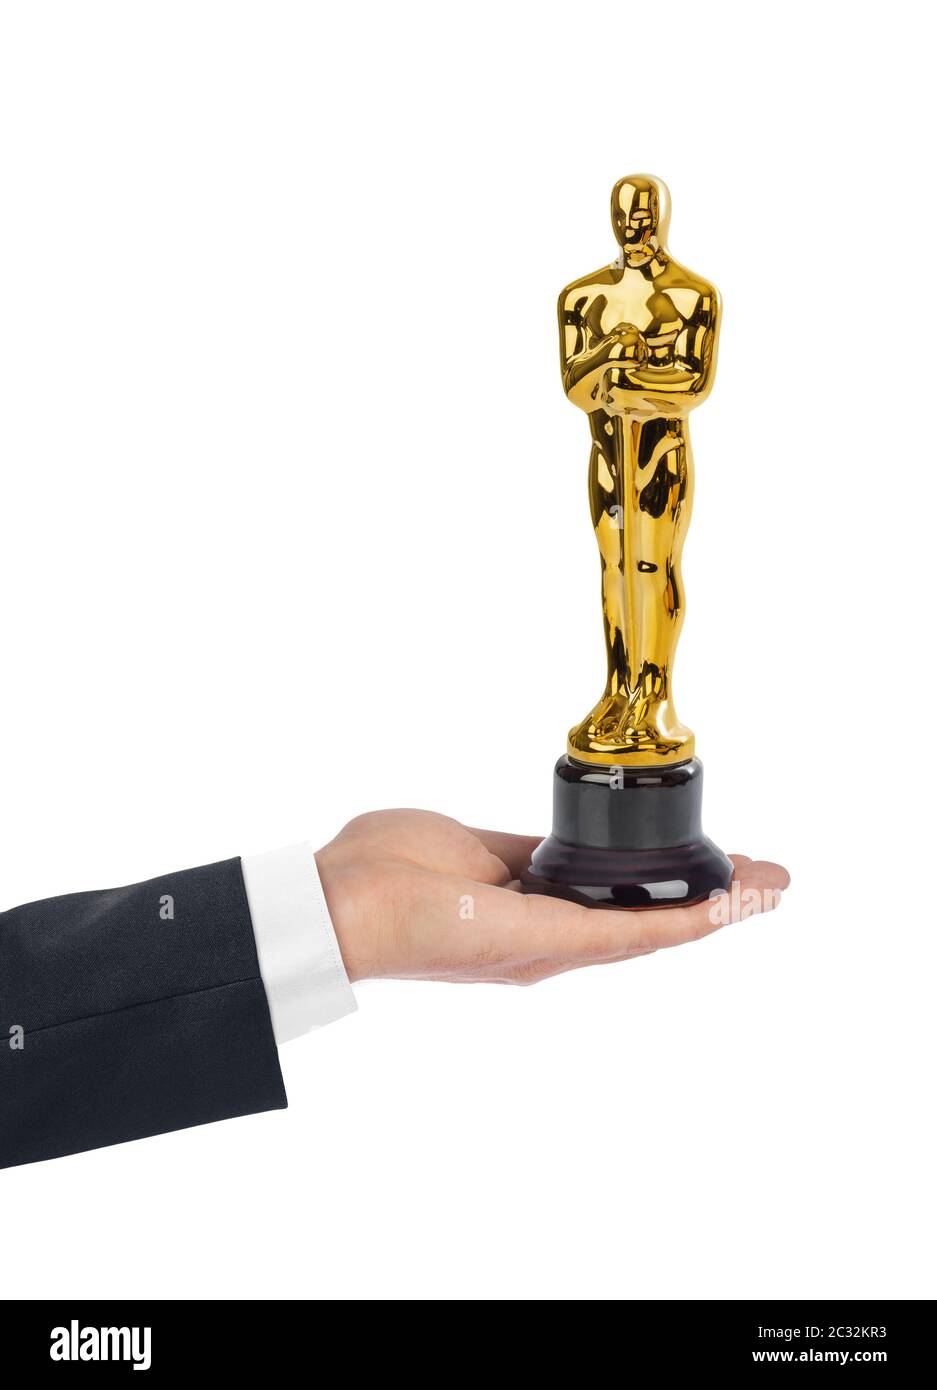 Hand with Award of Oscar ceremony Stock Photo